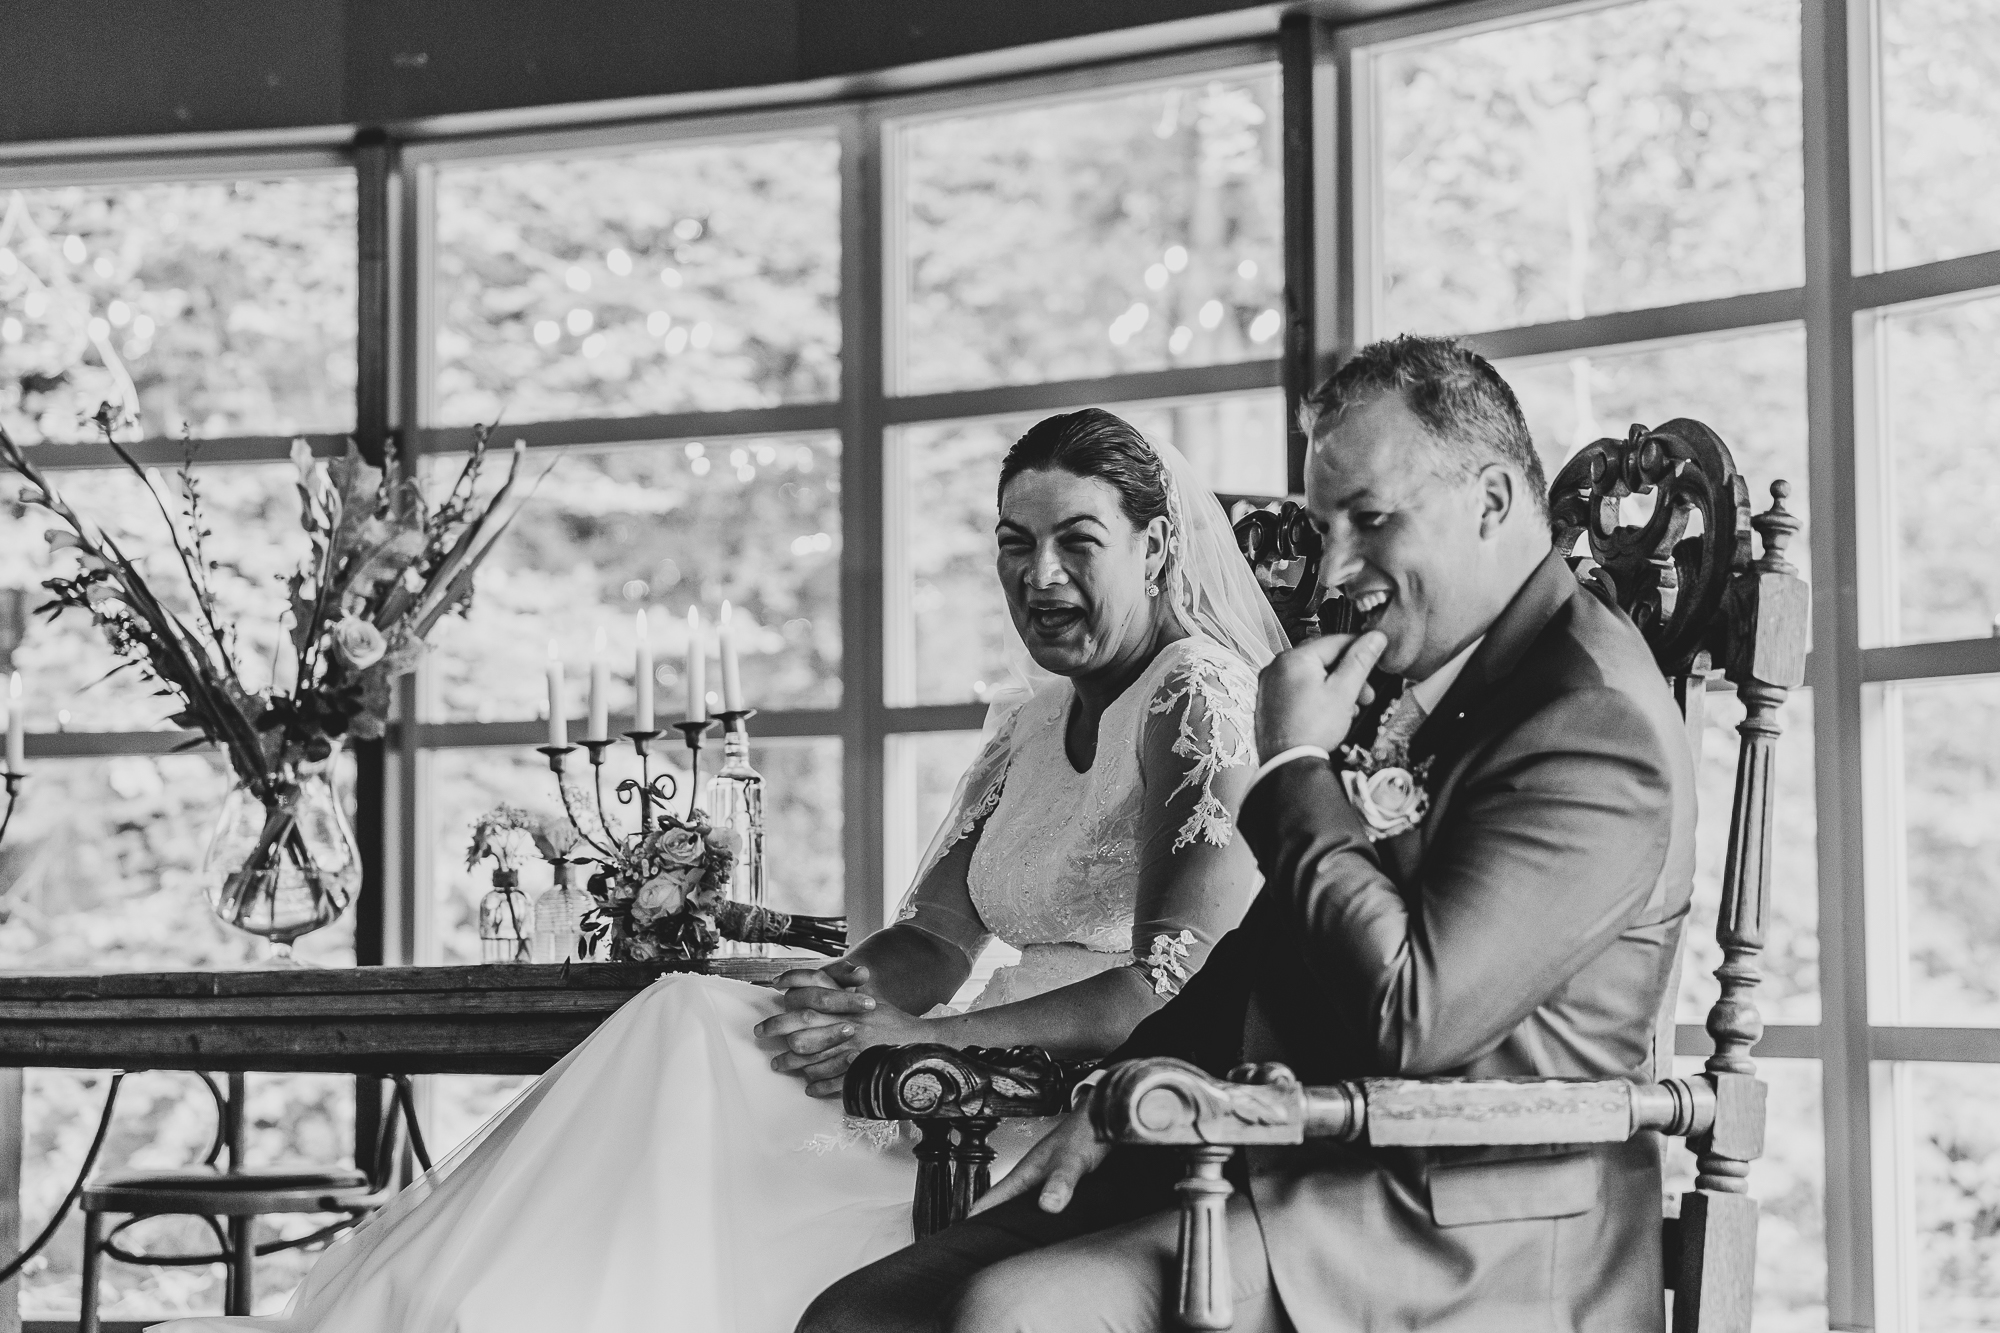 Zwart-wit huwelijksreportage door fotograaf Nickie Fotografie uit Dokkum, Friesland.